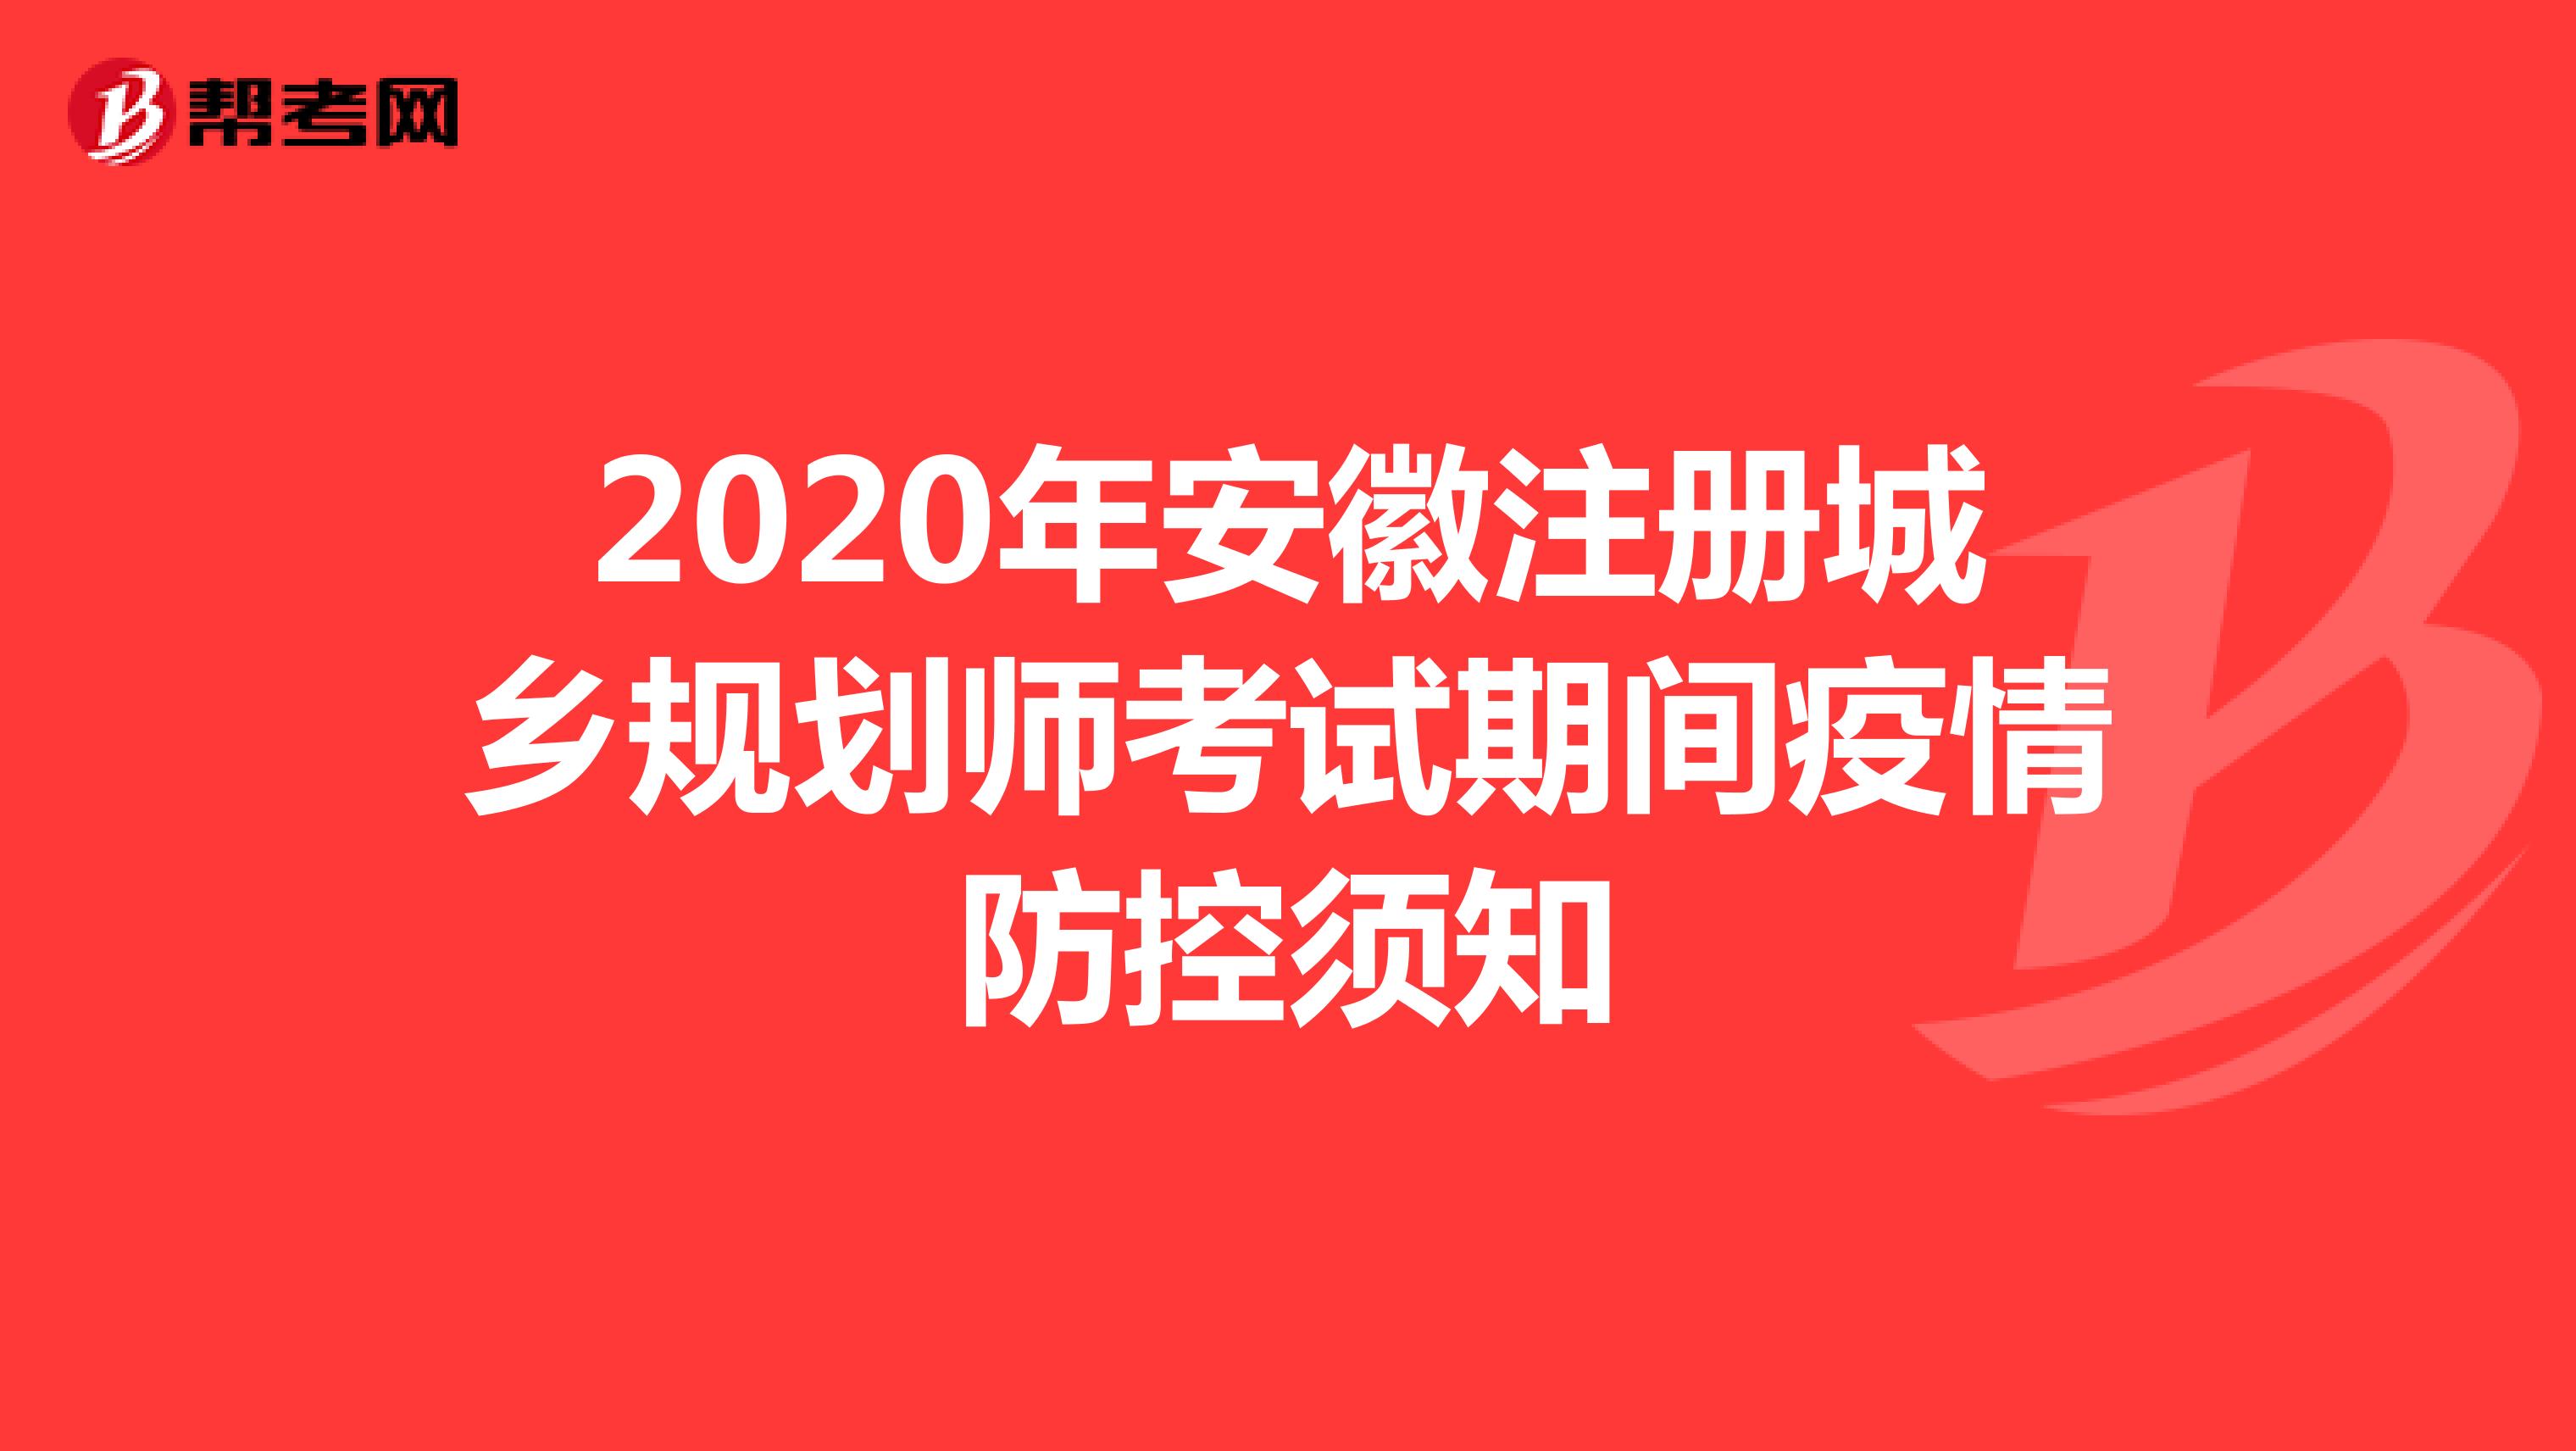 2020年安徽注册城乡规划师考试期间疫情防控须知